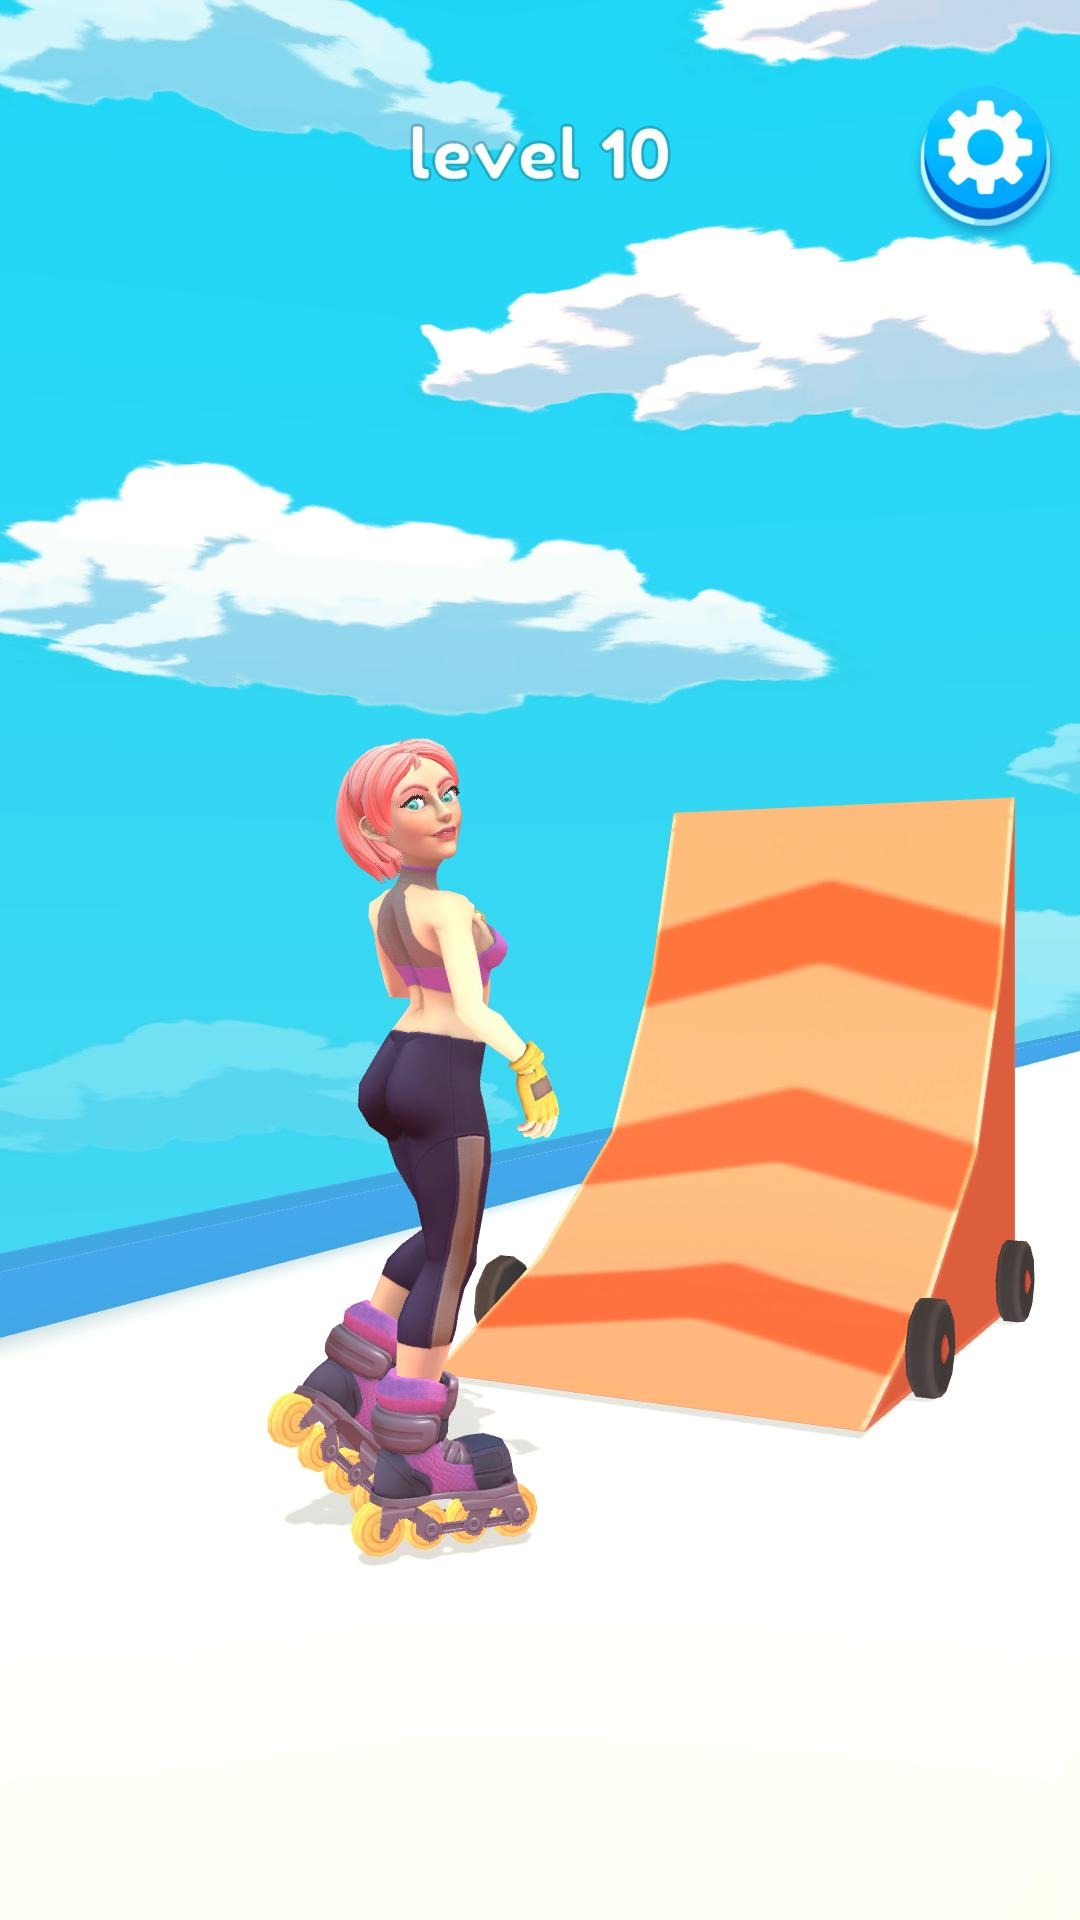 翻滚轮滑坡道最新游戏下载-翻滚轮滑坡道安卓版下载